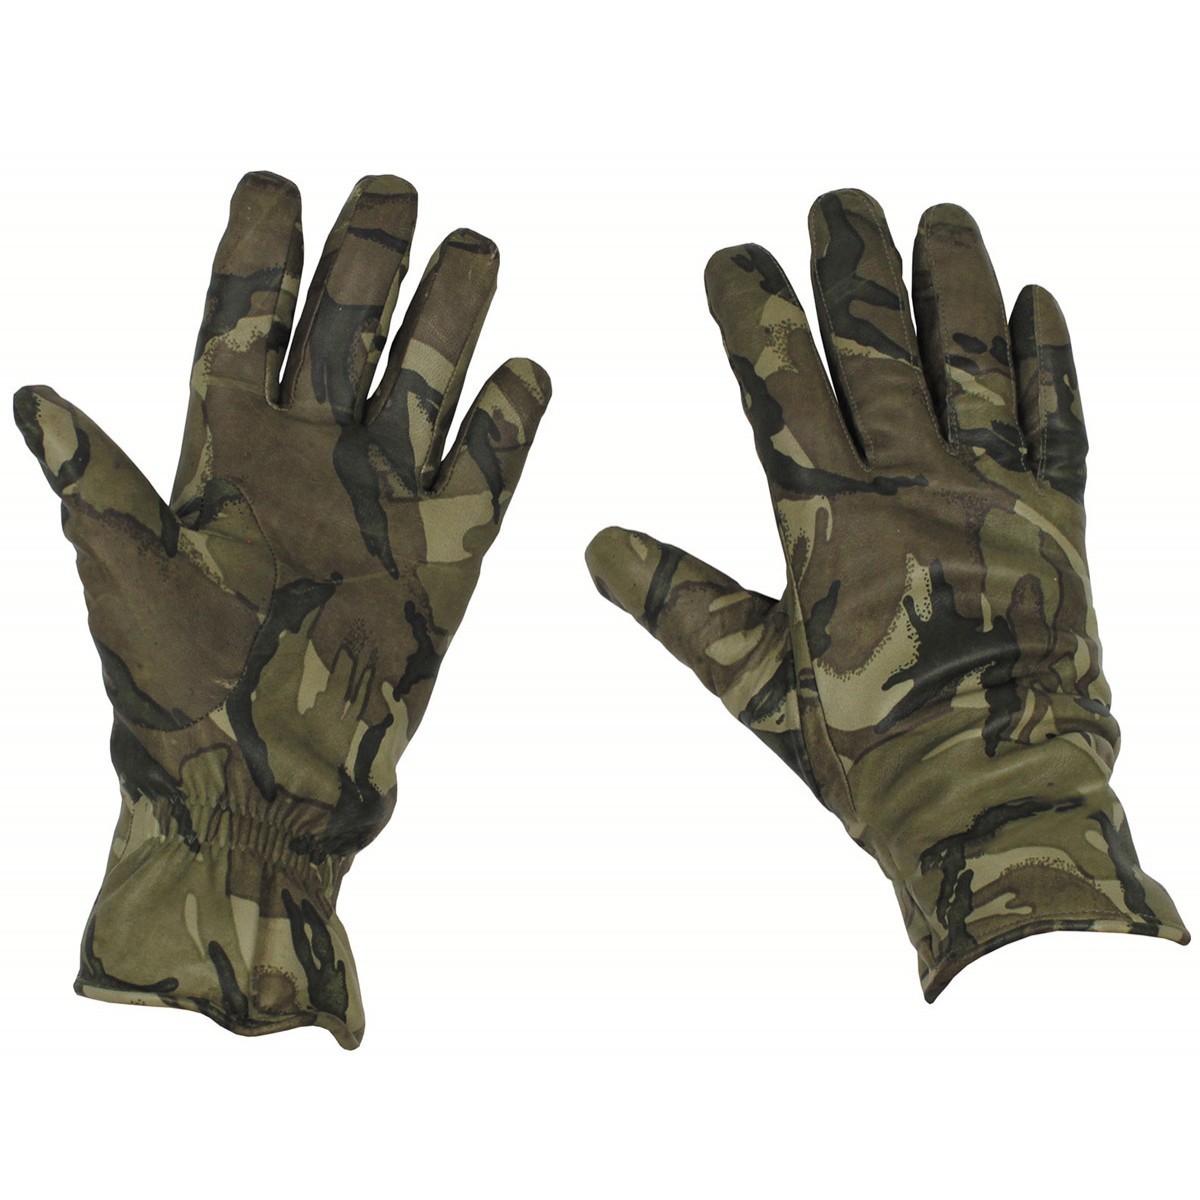 Rukavice kožené zateplené MK II Combat Glove MTP Velká Británie originál Velikost: 7 / XS (15-18 cm) použité